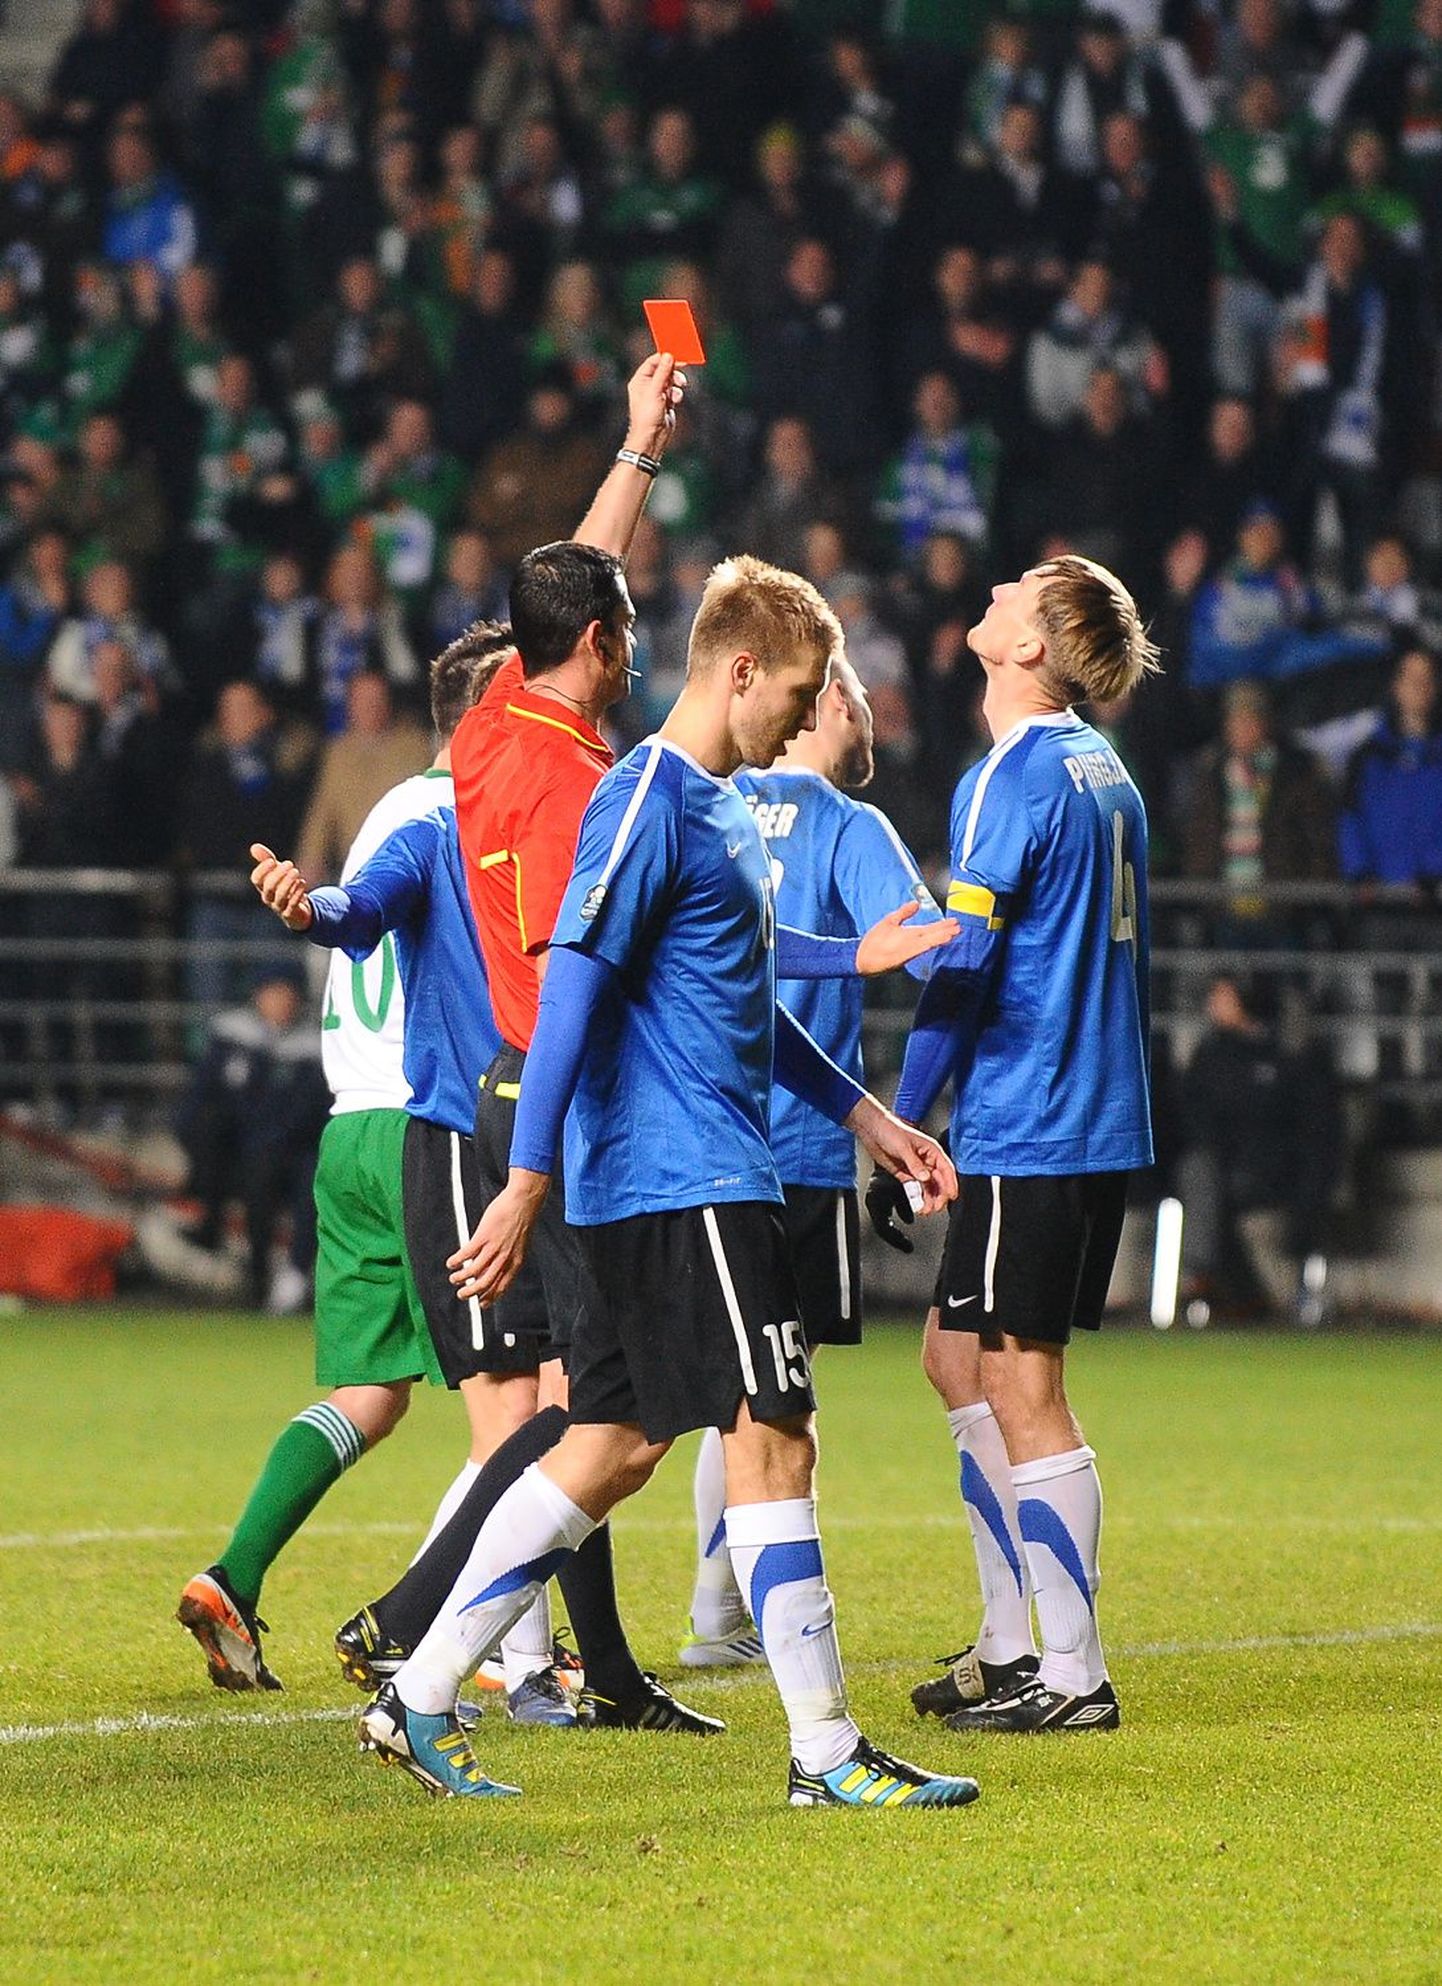 Две желтых карточки и удаление с поля в том памятном матче от Кашшаи получил и капитан сборной Эстонии Пийроя.